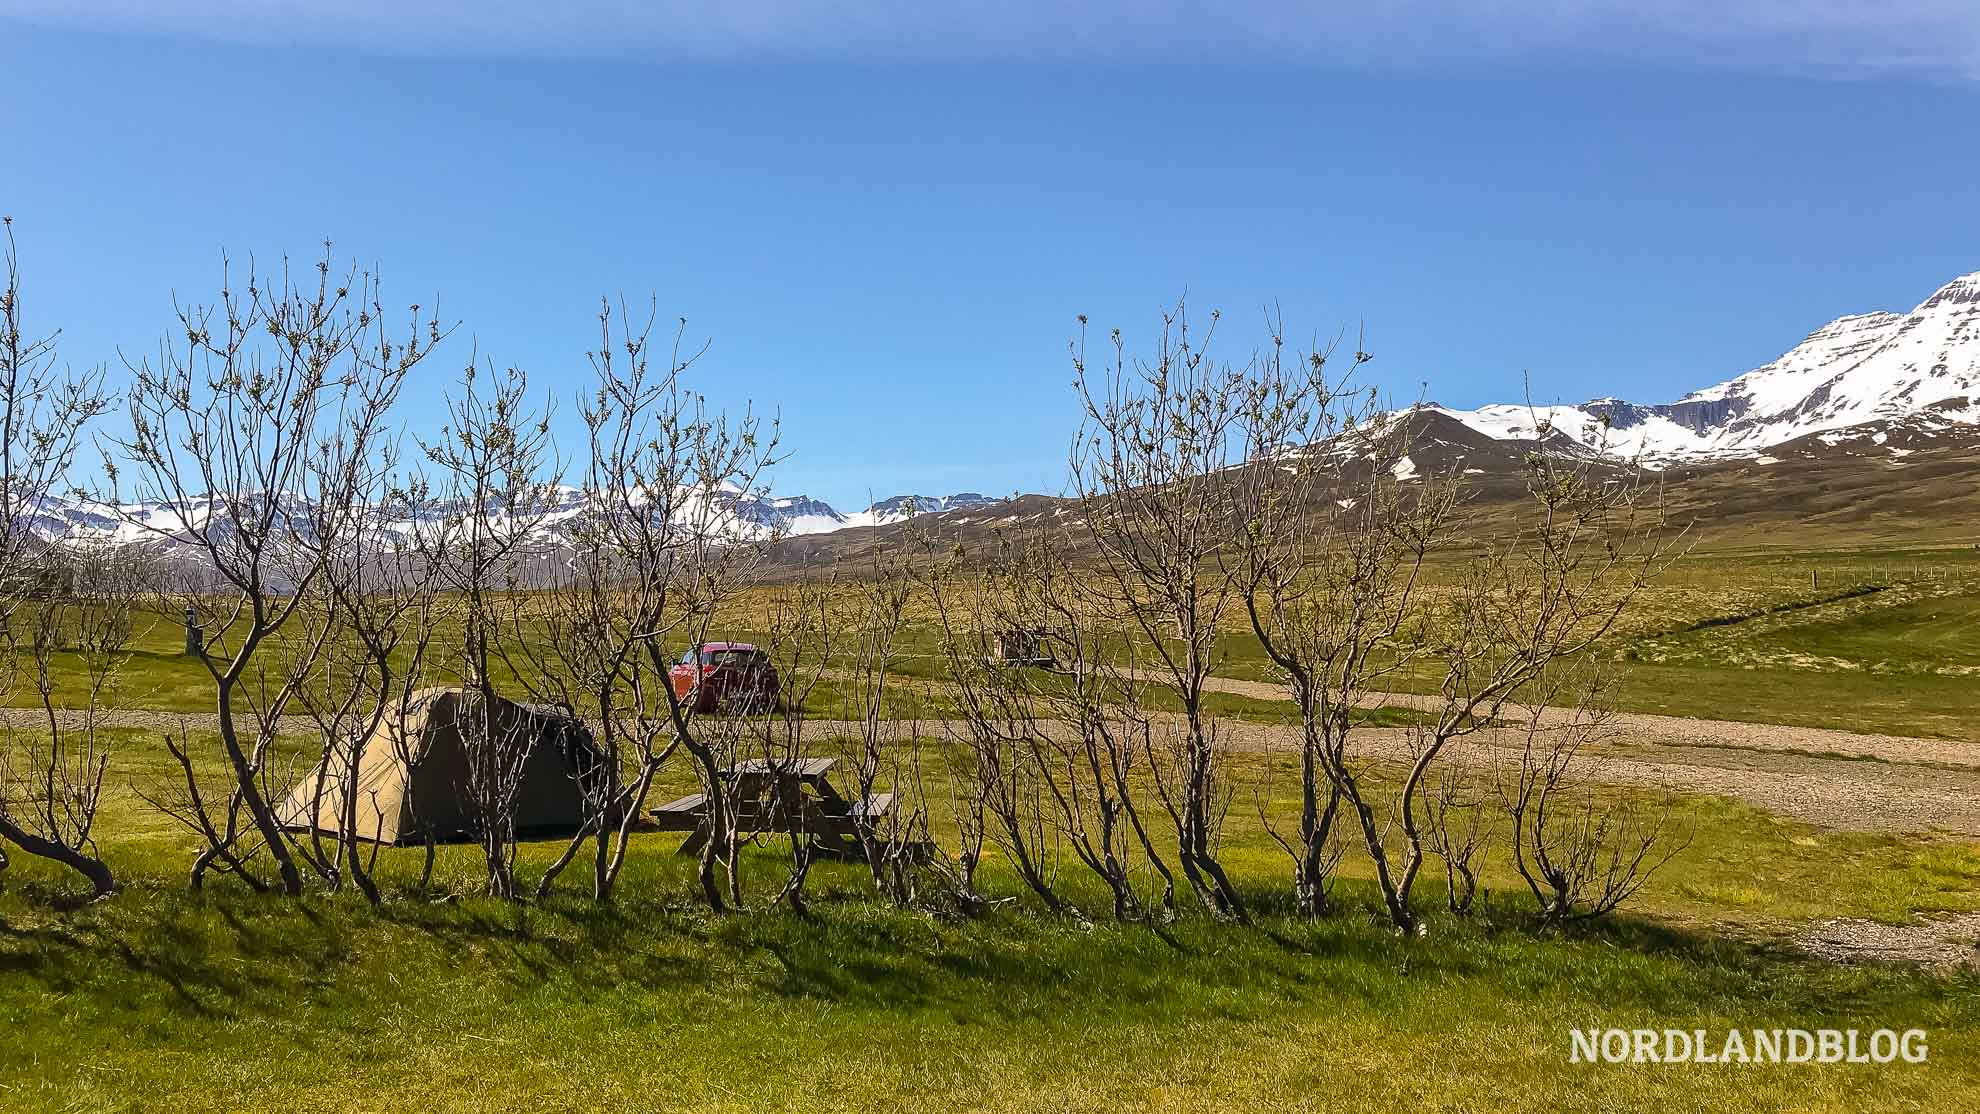 Zelte auf dem Campingplatz und Stellplatz für Wohnmobil in Borgarfjörður in Island (Nordlandblog)